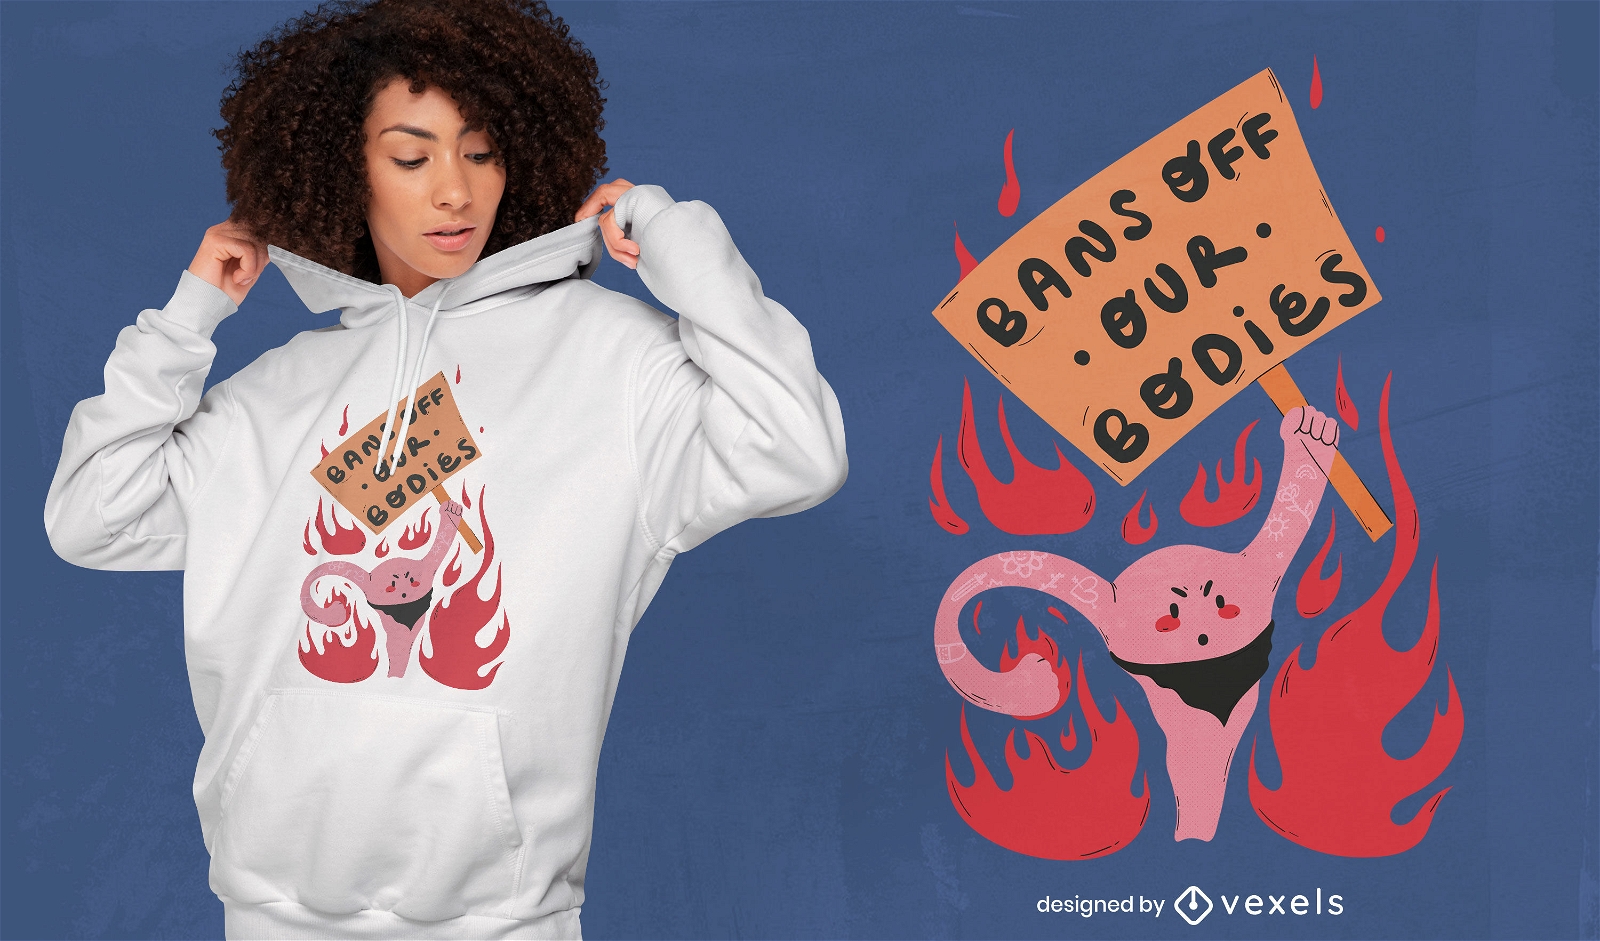 Wütendes Uterusprotest-T-Shirt-Design